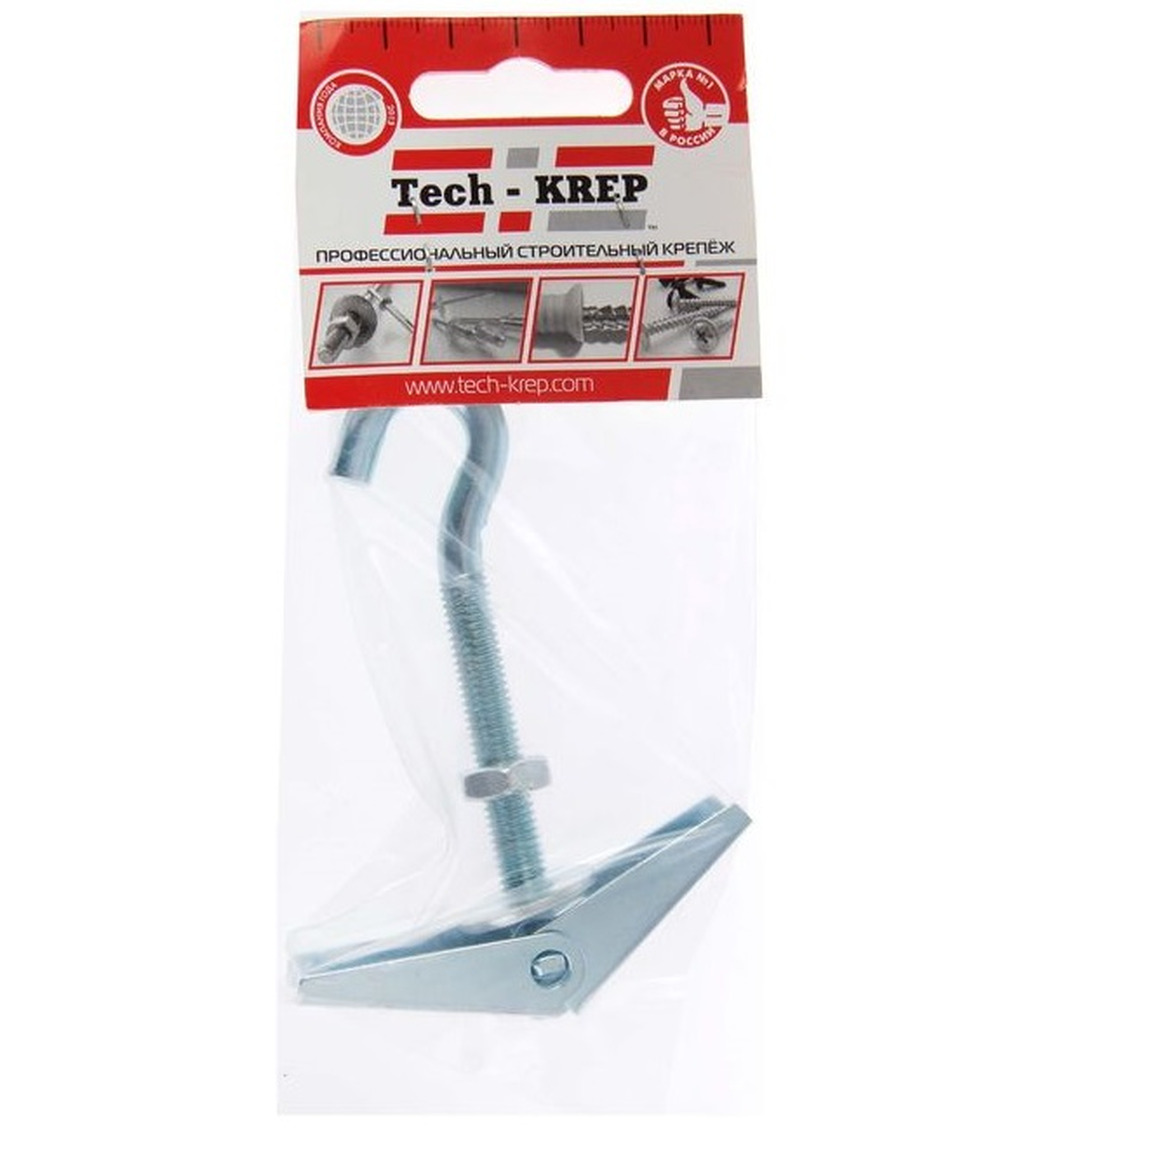 Анкер складной пружинный с крюком М8  1 шт  - пакет Tech-Krep 103901